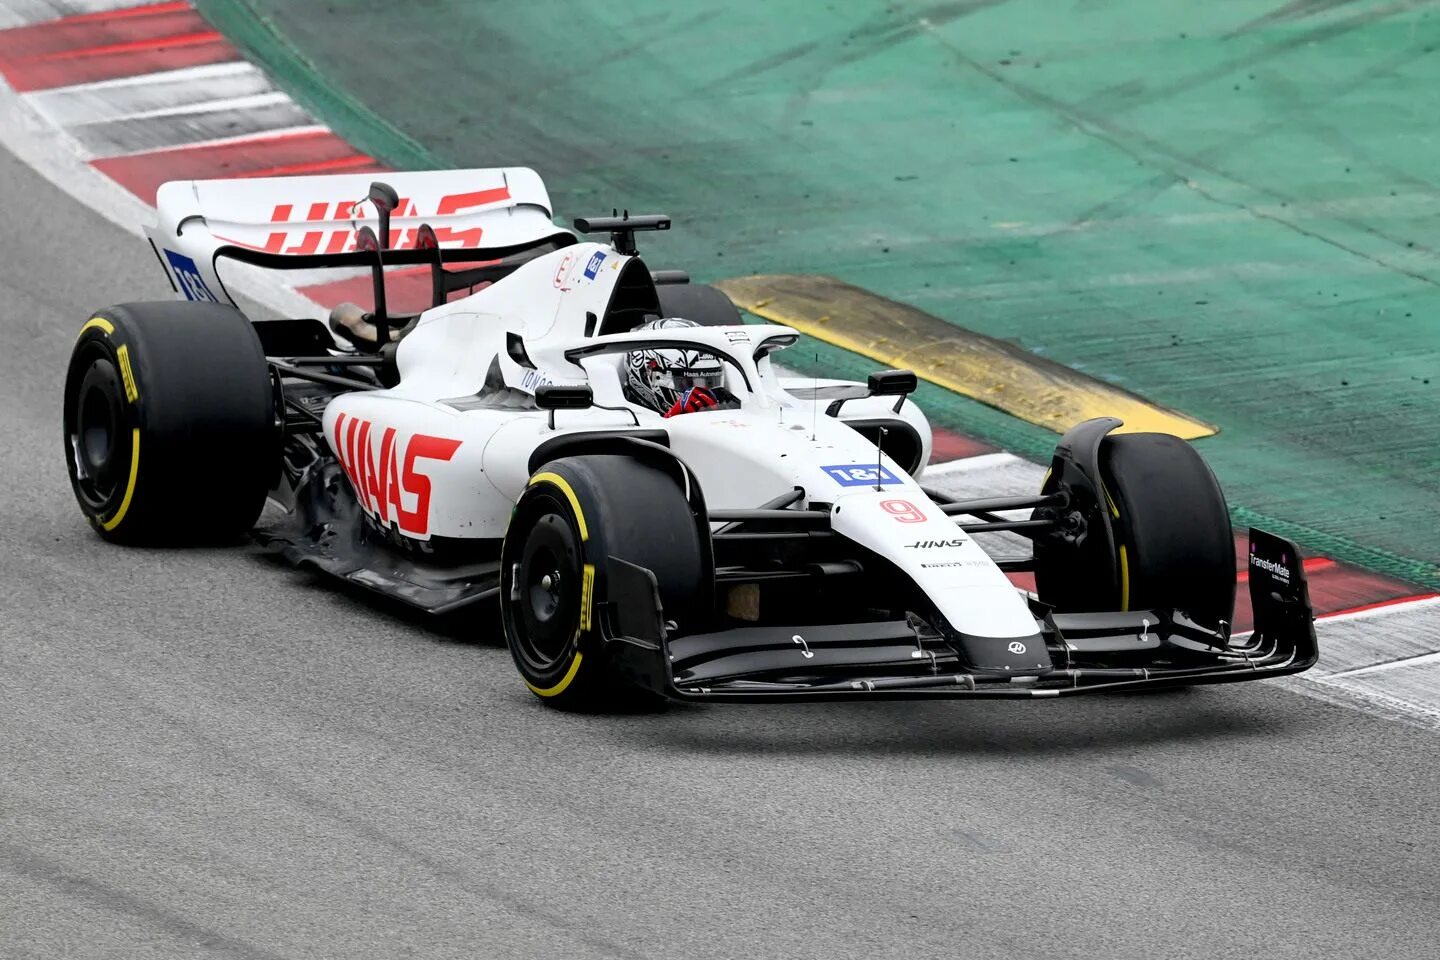 Haas f1 Team 2022. Хаас ф1 2022. Haas f1 2022 car. Haas f1 Мазепин. Формула 1 завтра